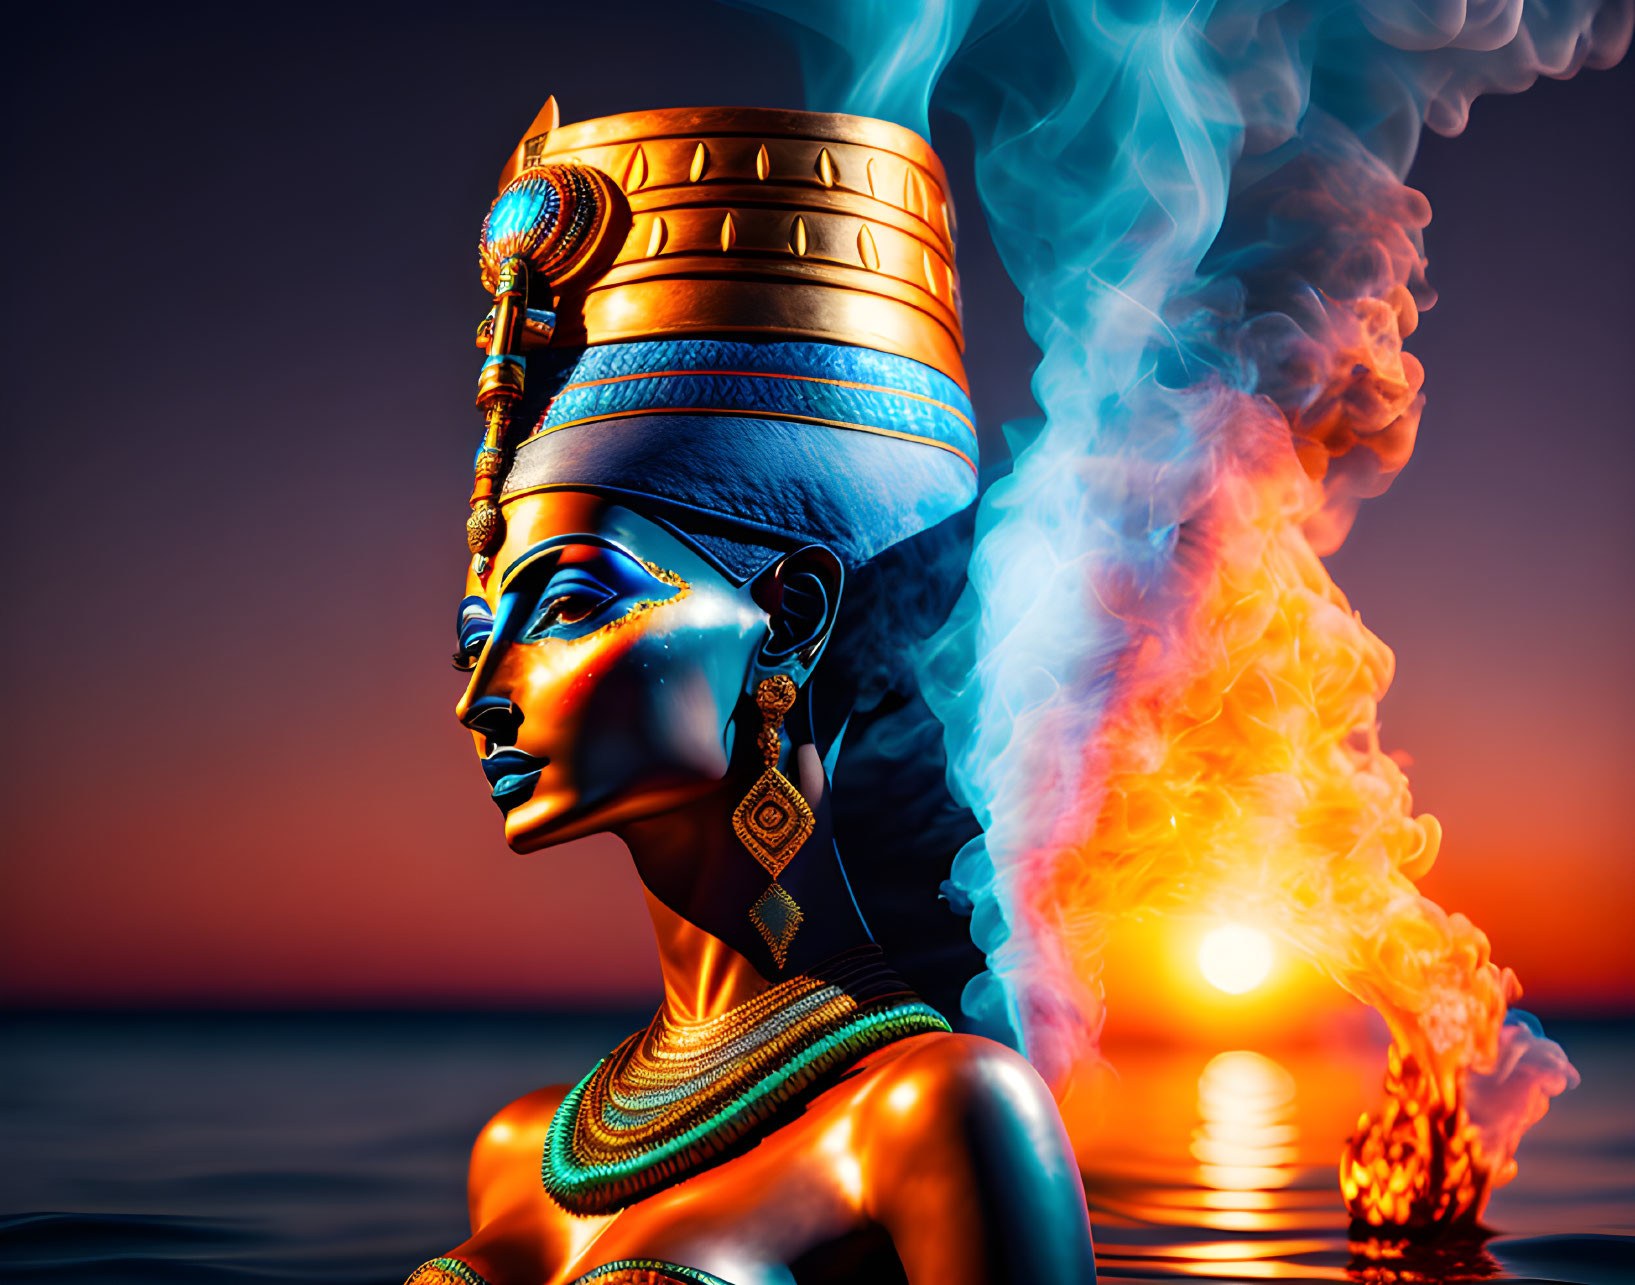 Egyptian queen with golden headdress near blue flame on sunset ocean.